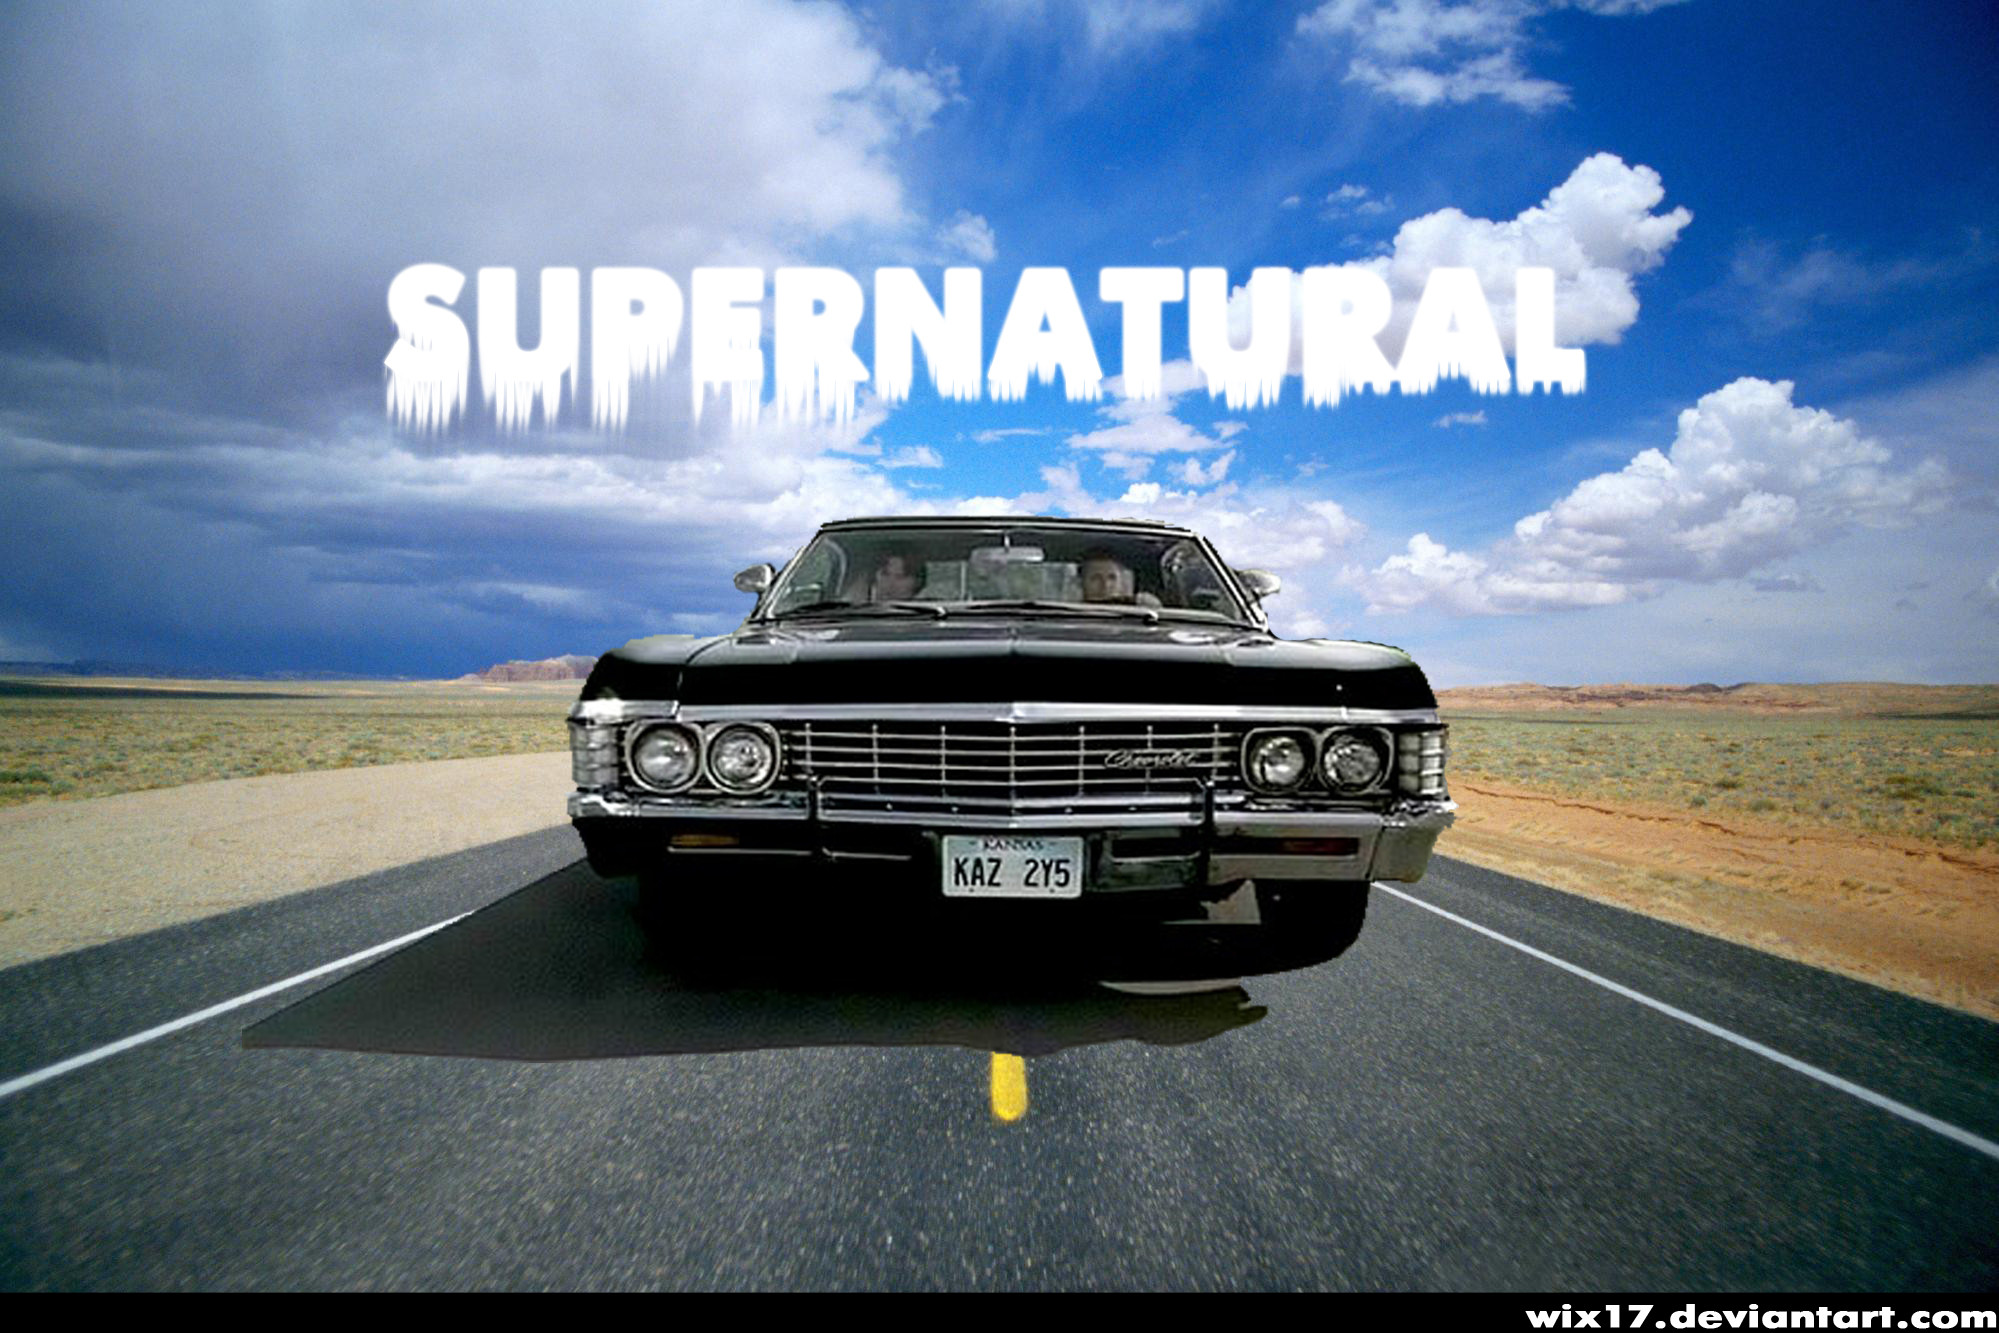 Supernatural Impala Wallpaper Widescreen Supernatural 67 impala by